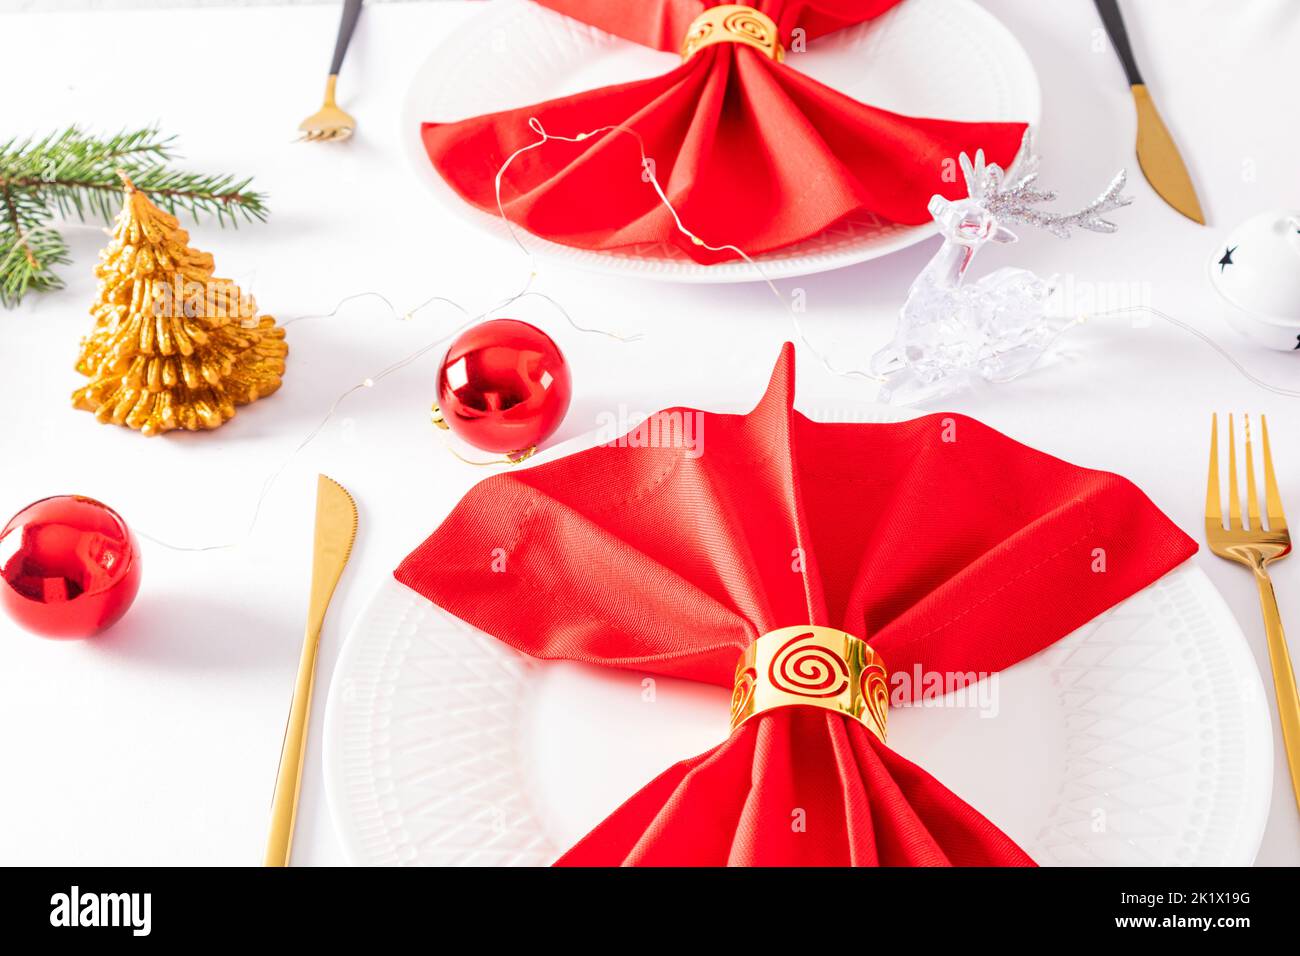 Belle décoration moderne de la table de fête. Serviettes rouges pliées en éventail avec décorations sur des assiettes blanches Banque D'Images